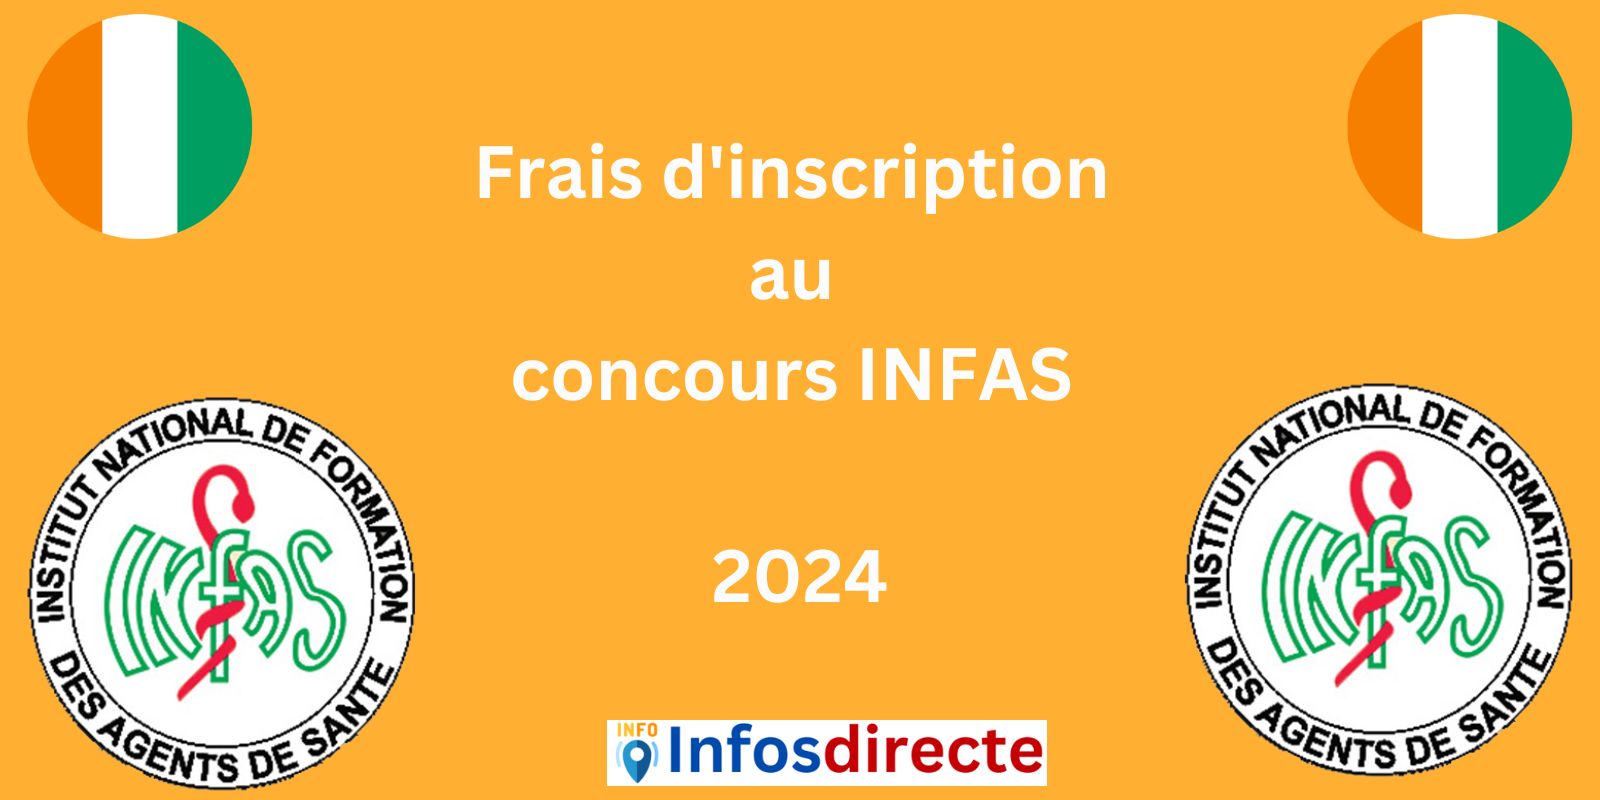 frais d'inscription au concours INFAS 2024